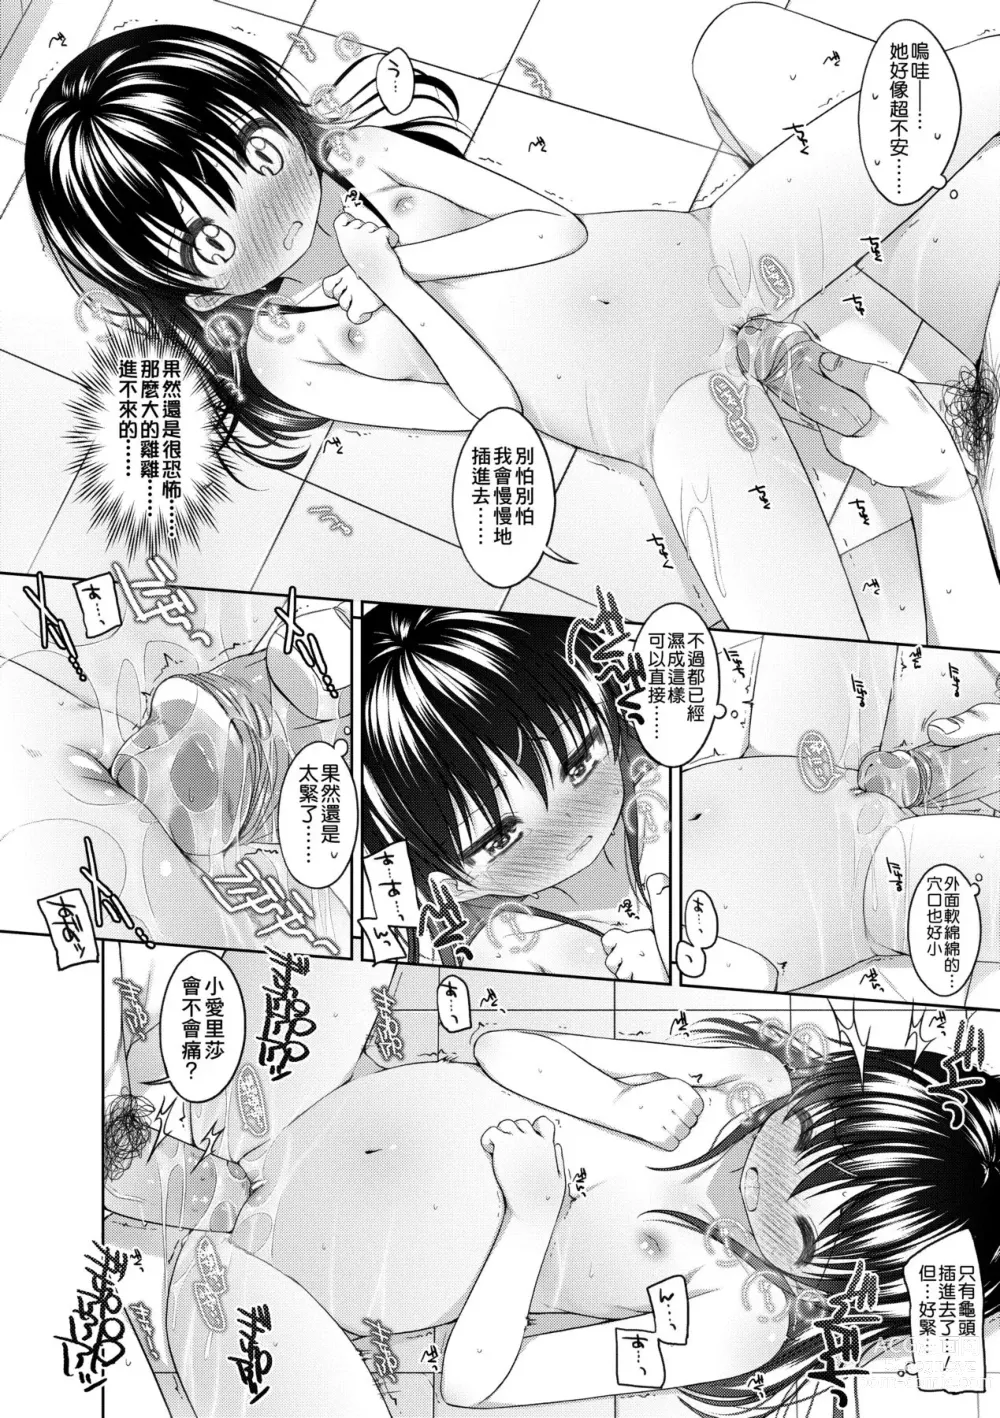 Page 25 of manga Chiisaiko Iiyone... (decensored)